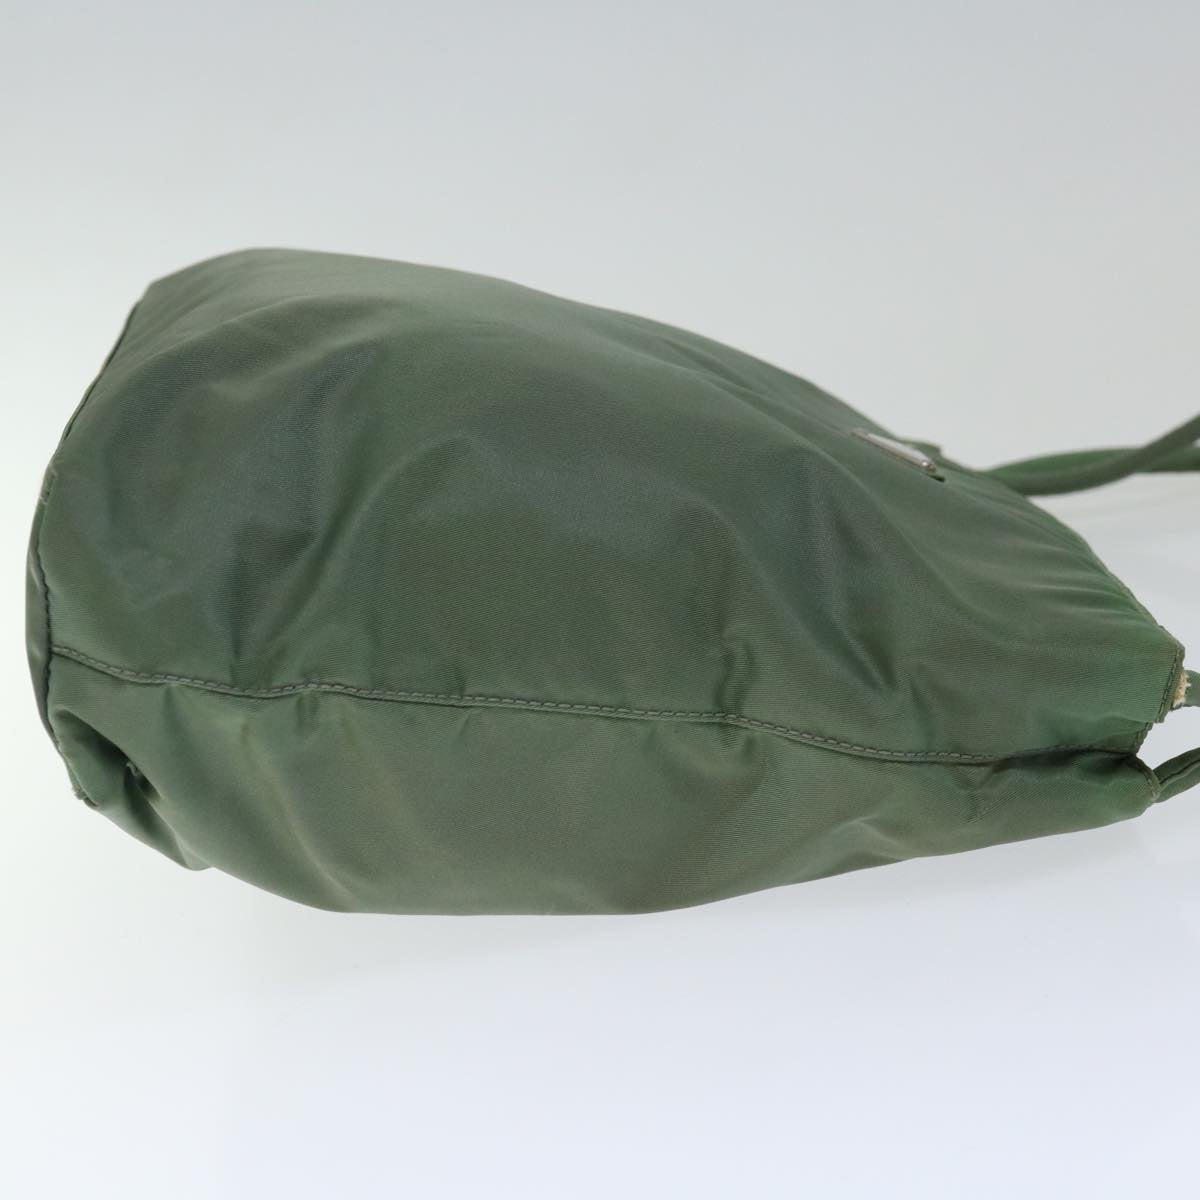 PRADA Hand Bag Nylon Khaki Auth 70592